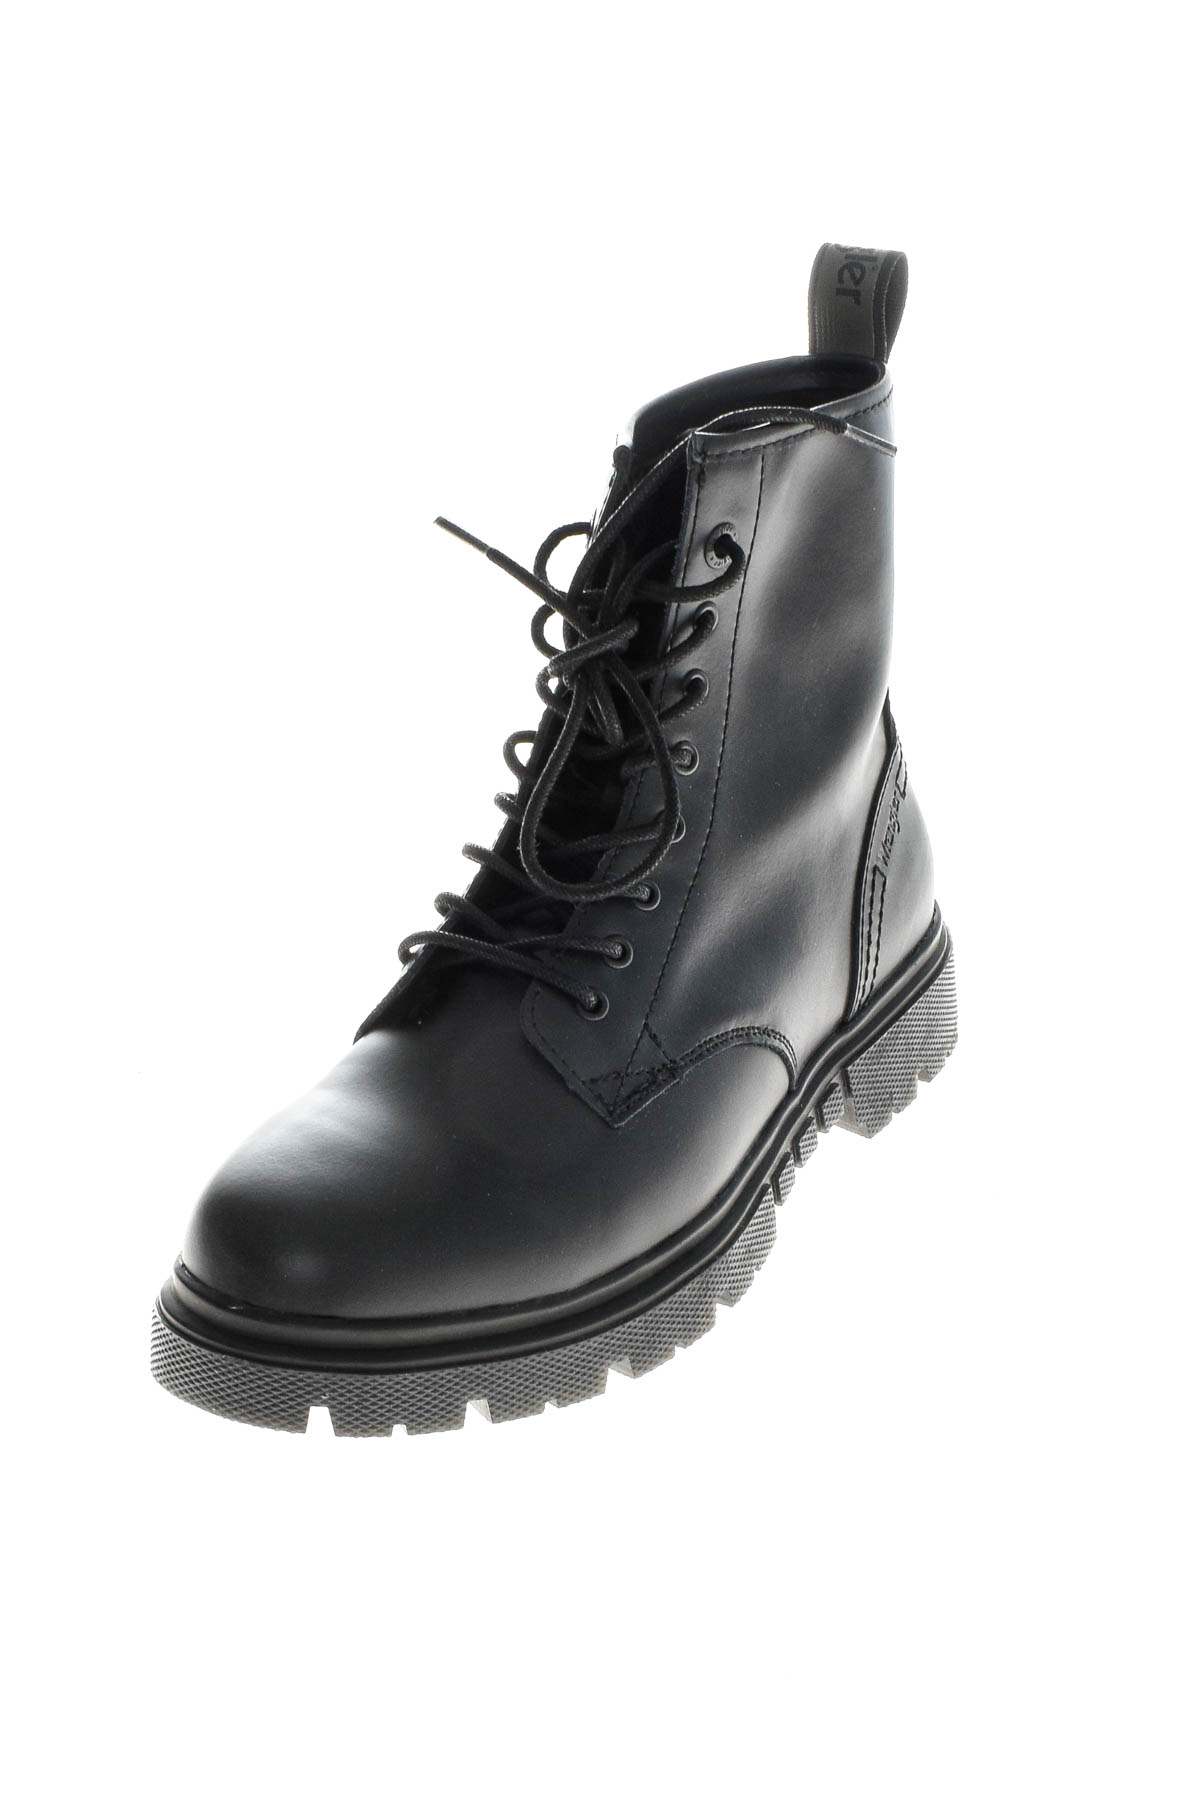 Men's boots - Wrangler - 1